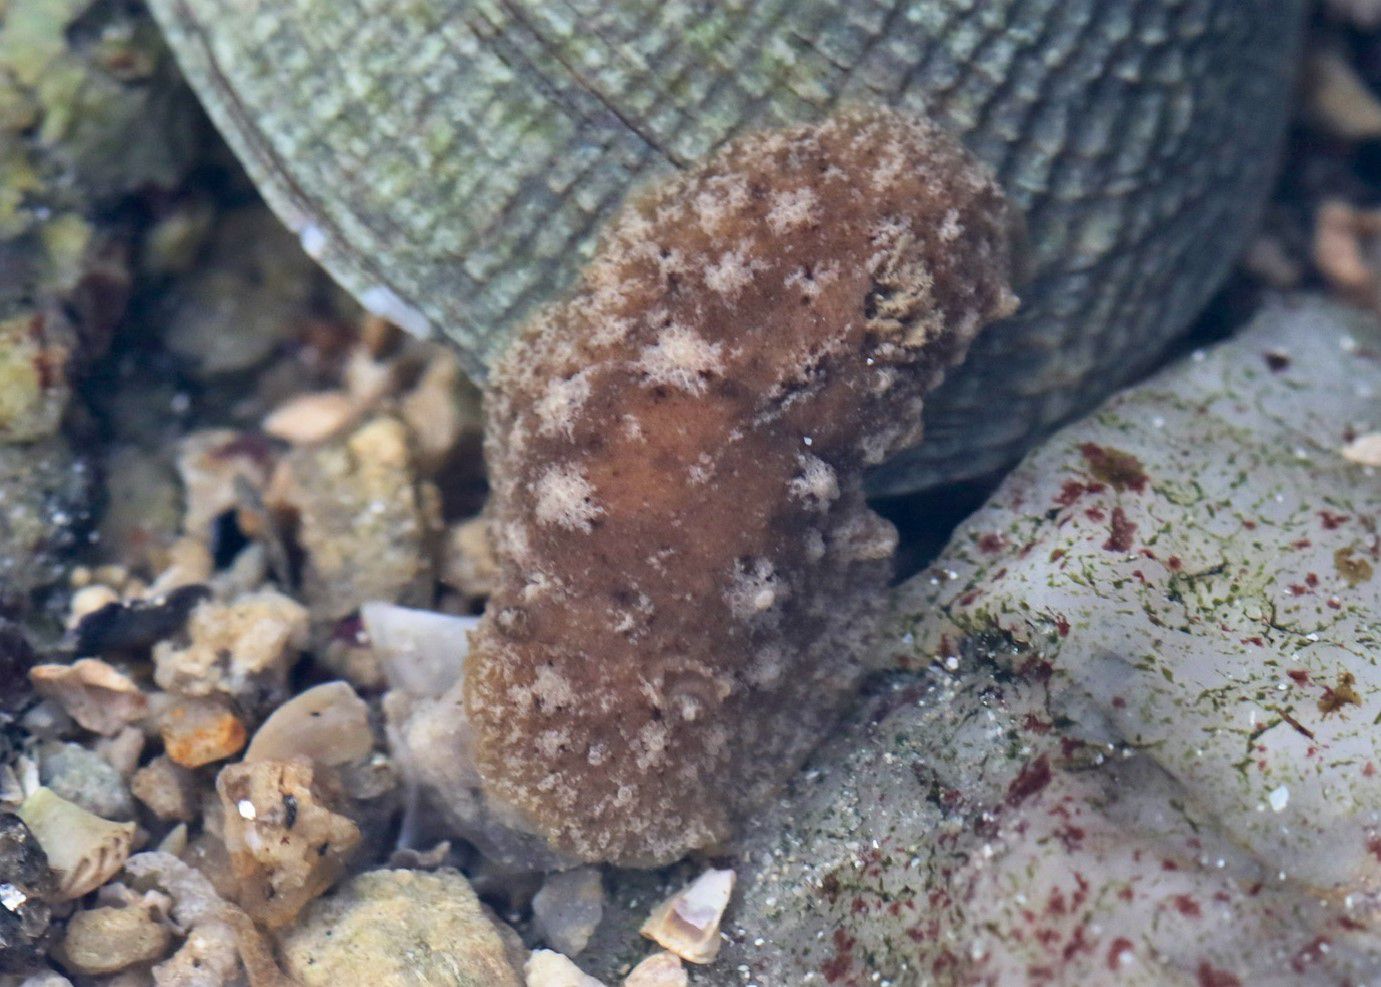 Parmi les Gastéropodes sans coquille (Limaces), voici encore une belle découverte : Geitodoris planata (anciennement Discodoris planata) taille : 13mm